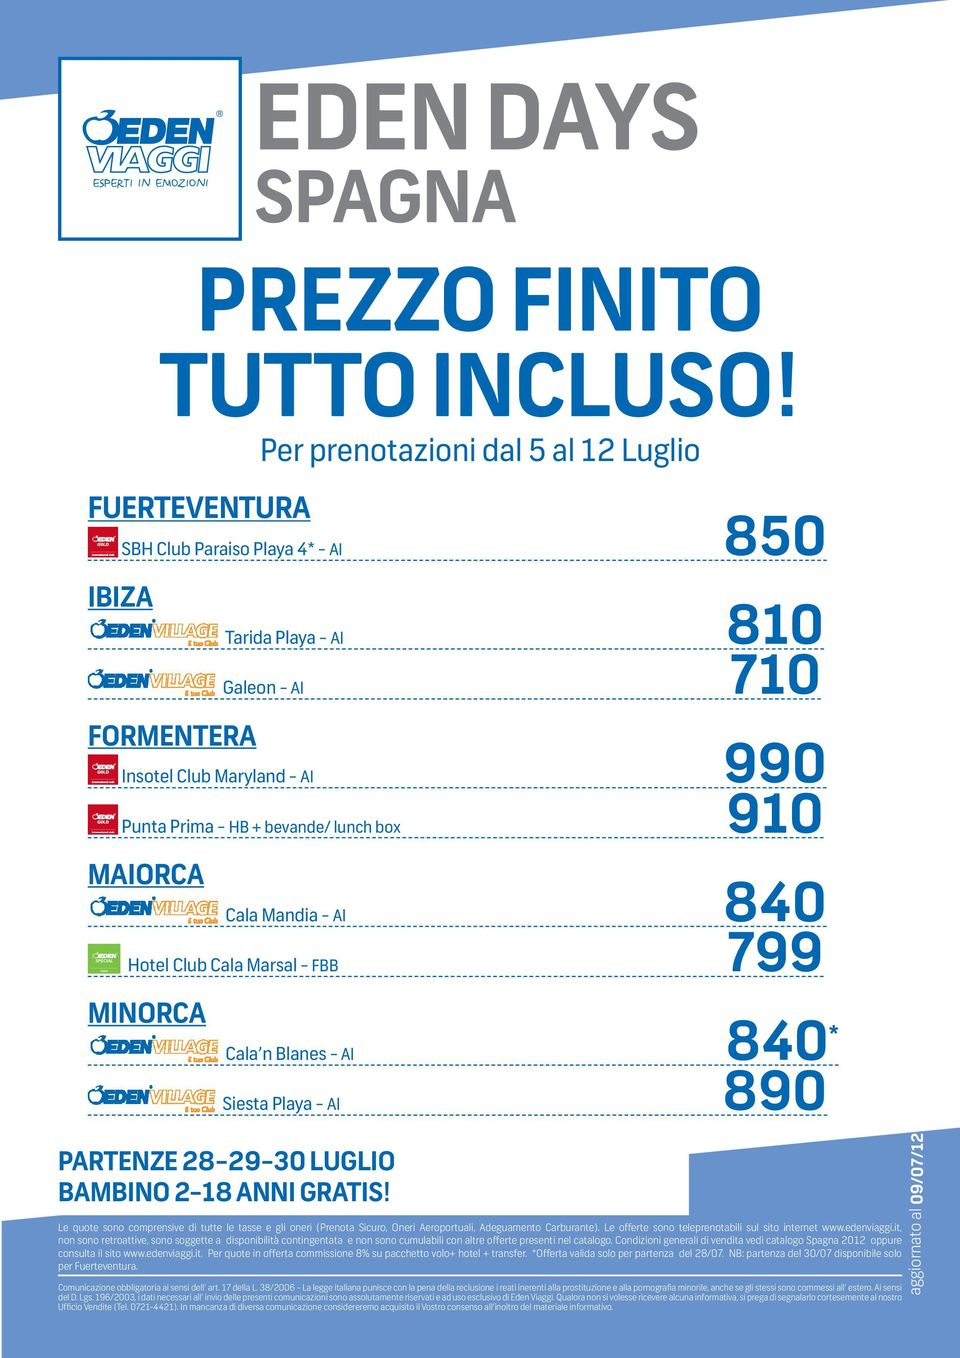 (Prenota Sicuro, Oneri Aeroportuali, Adeguamento Carburante). Le offerte sono teleprenotabili sul sito internet www.edenviaggi.